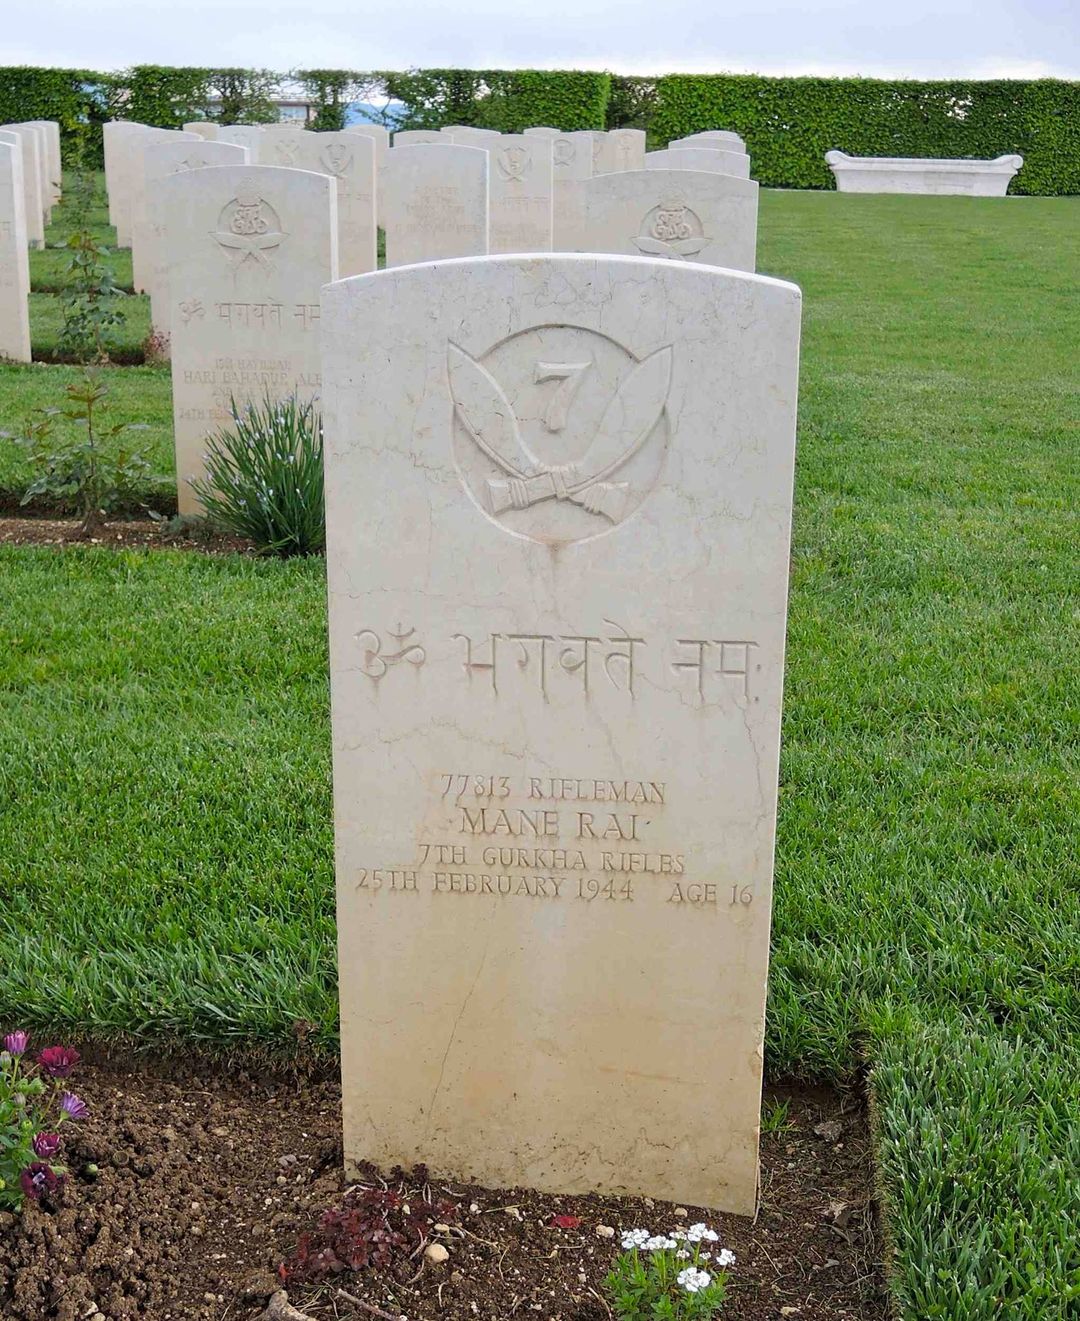 <p>Cimitero Militare Britannico di Cassino, la tomba del fuciliere Mane Rai del <i>1/7 Gurkha Rifles</i> caduto il 25 febbraio 1944 a 16 anni ai piedi della quota 593.</p>